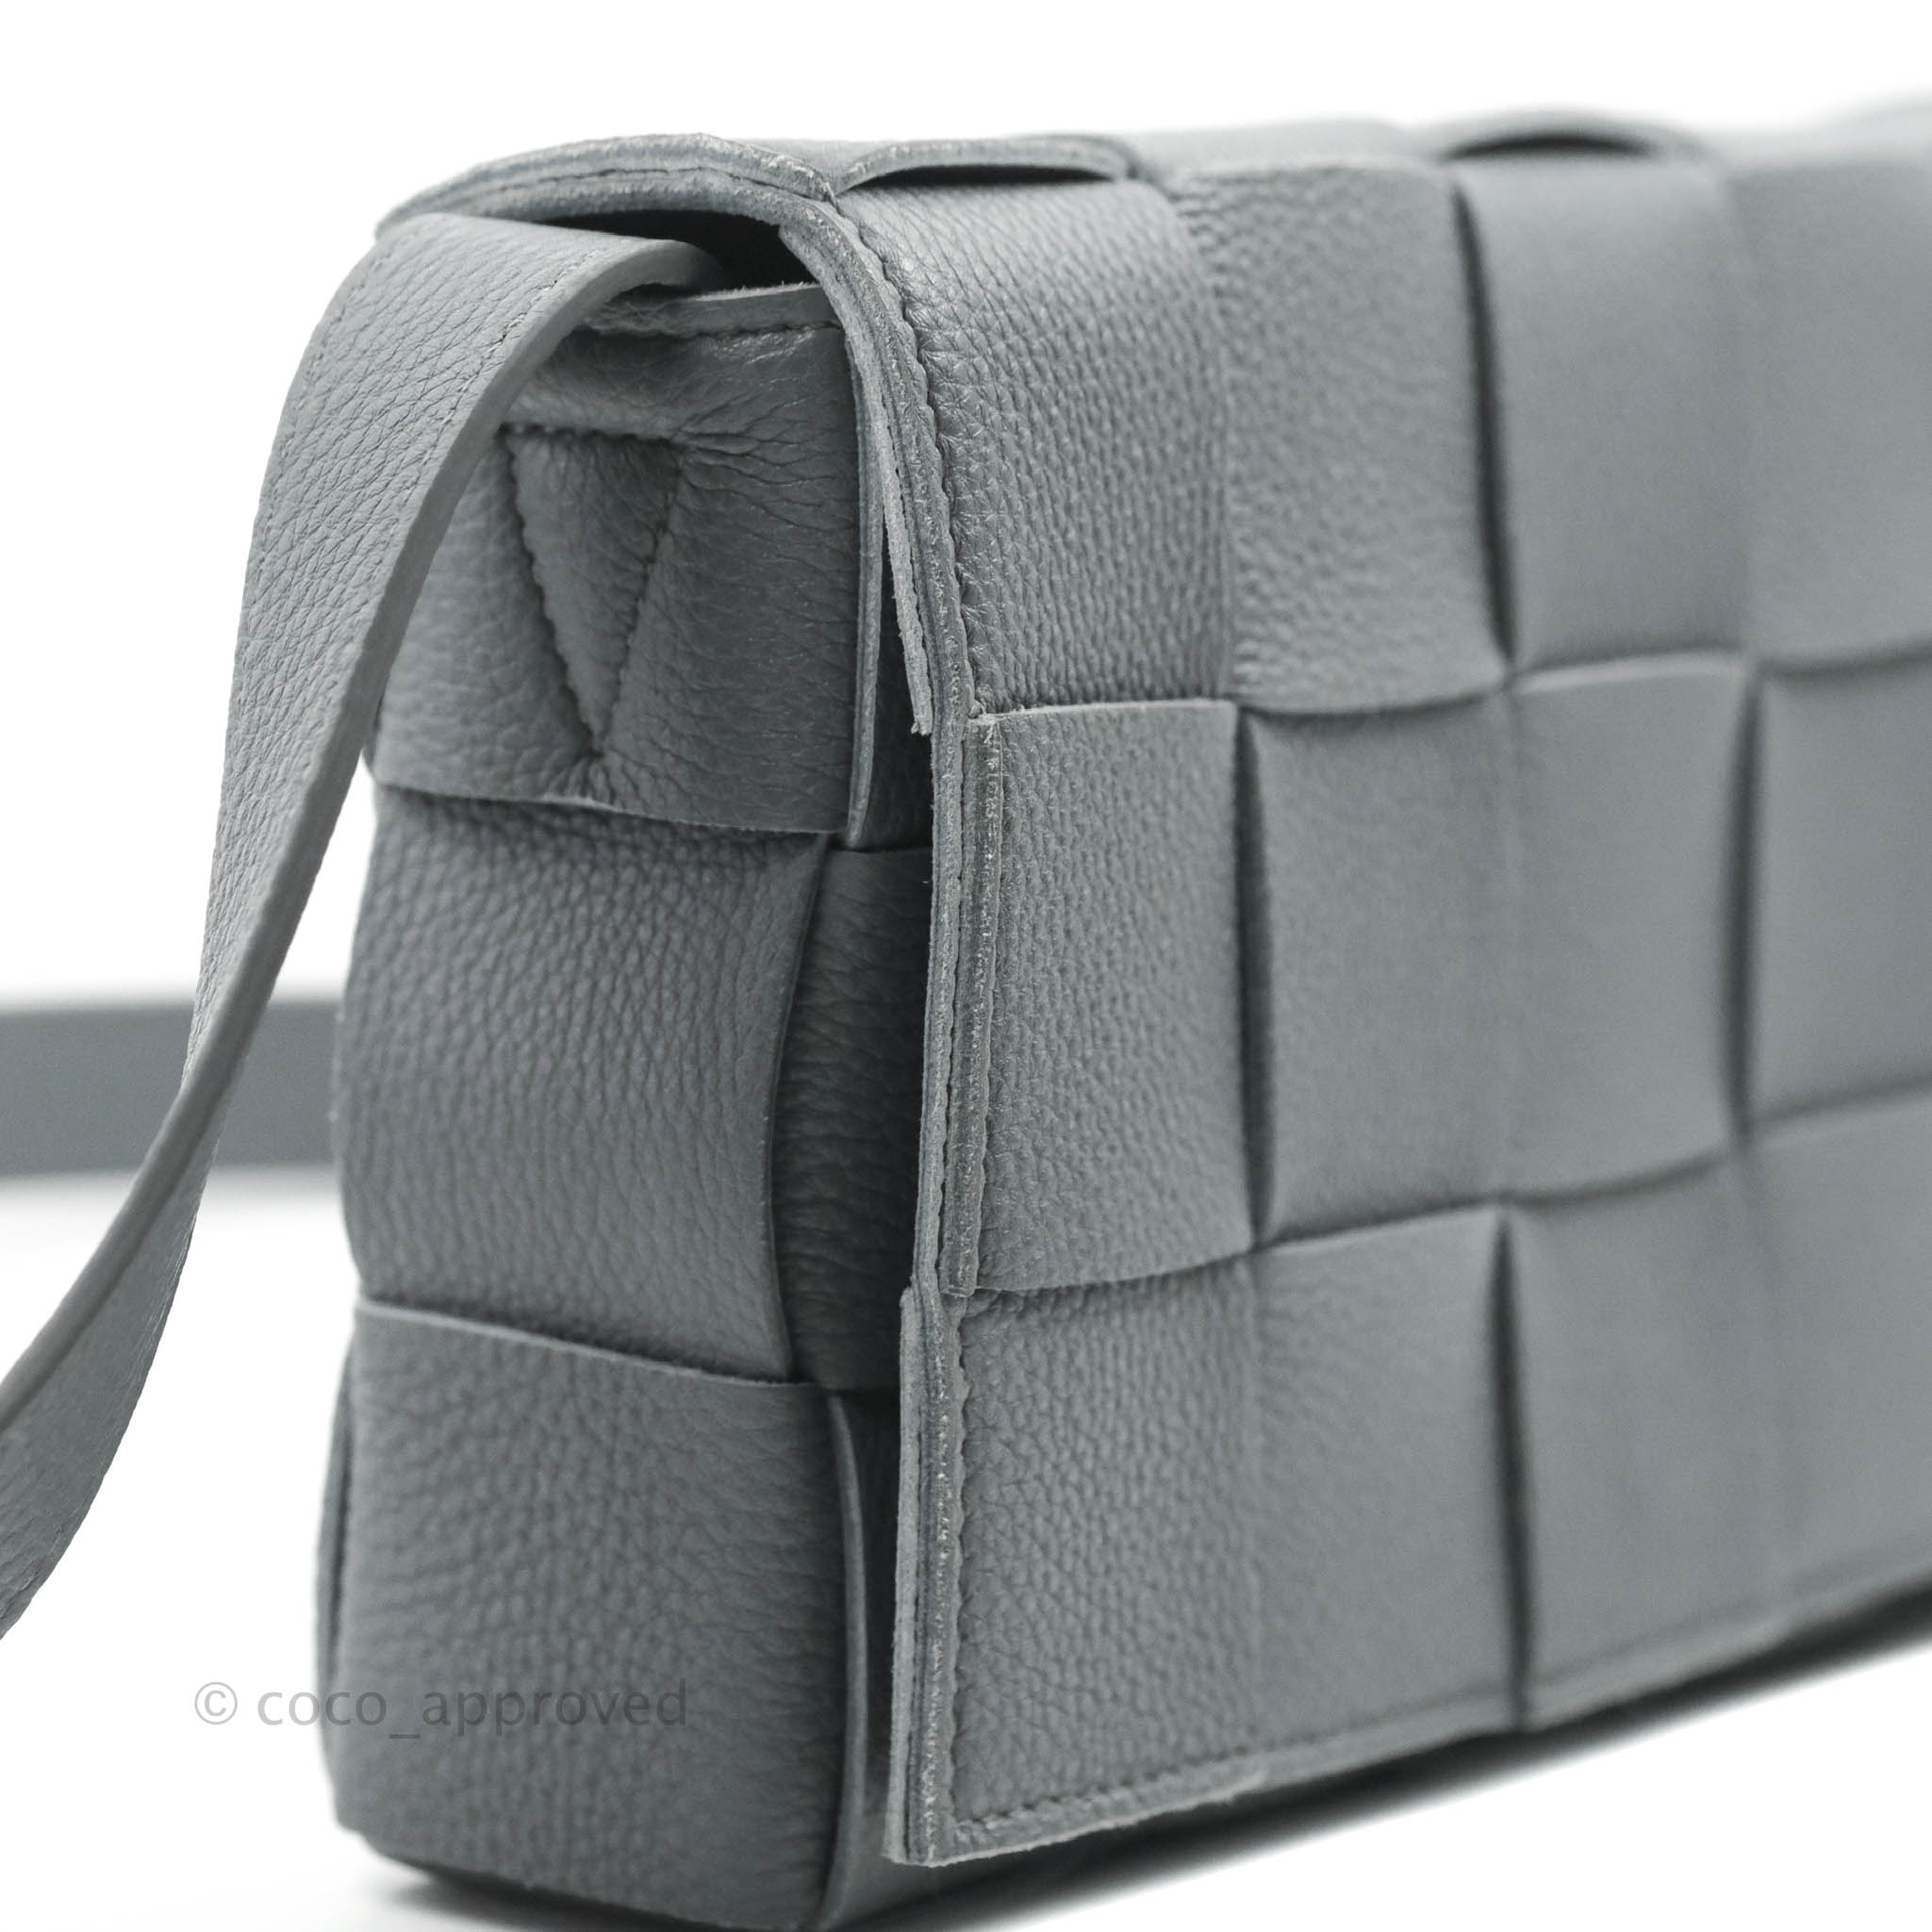 TAPE shoulder bag in grey calfskin leather